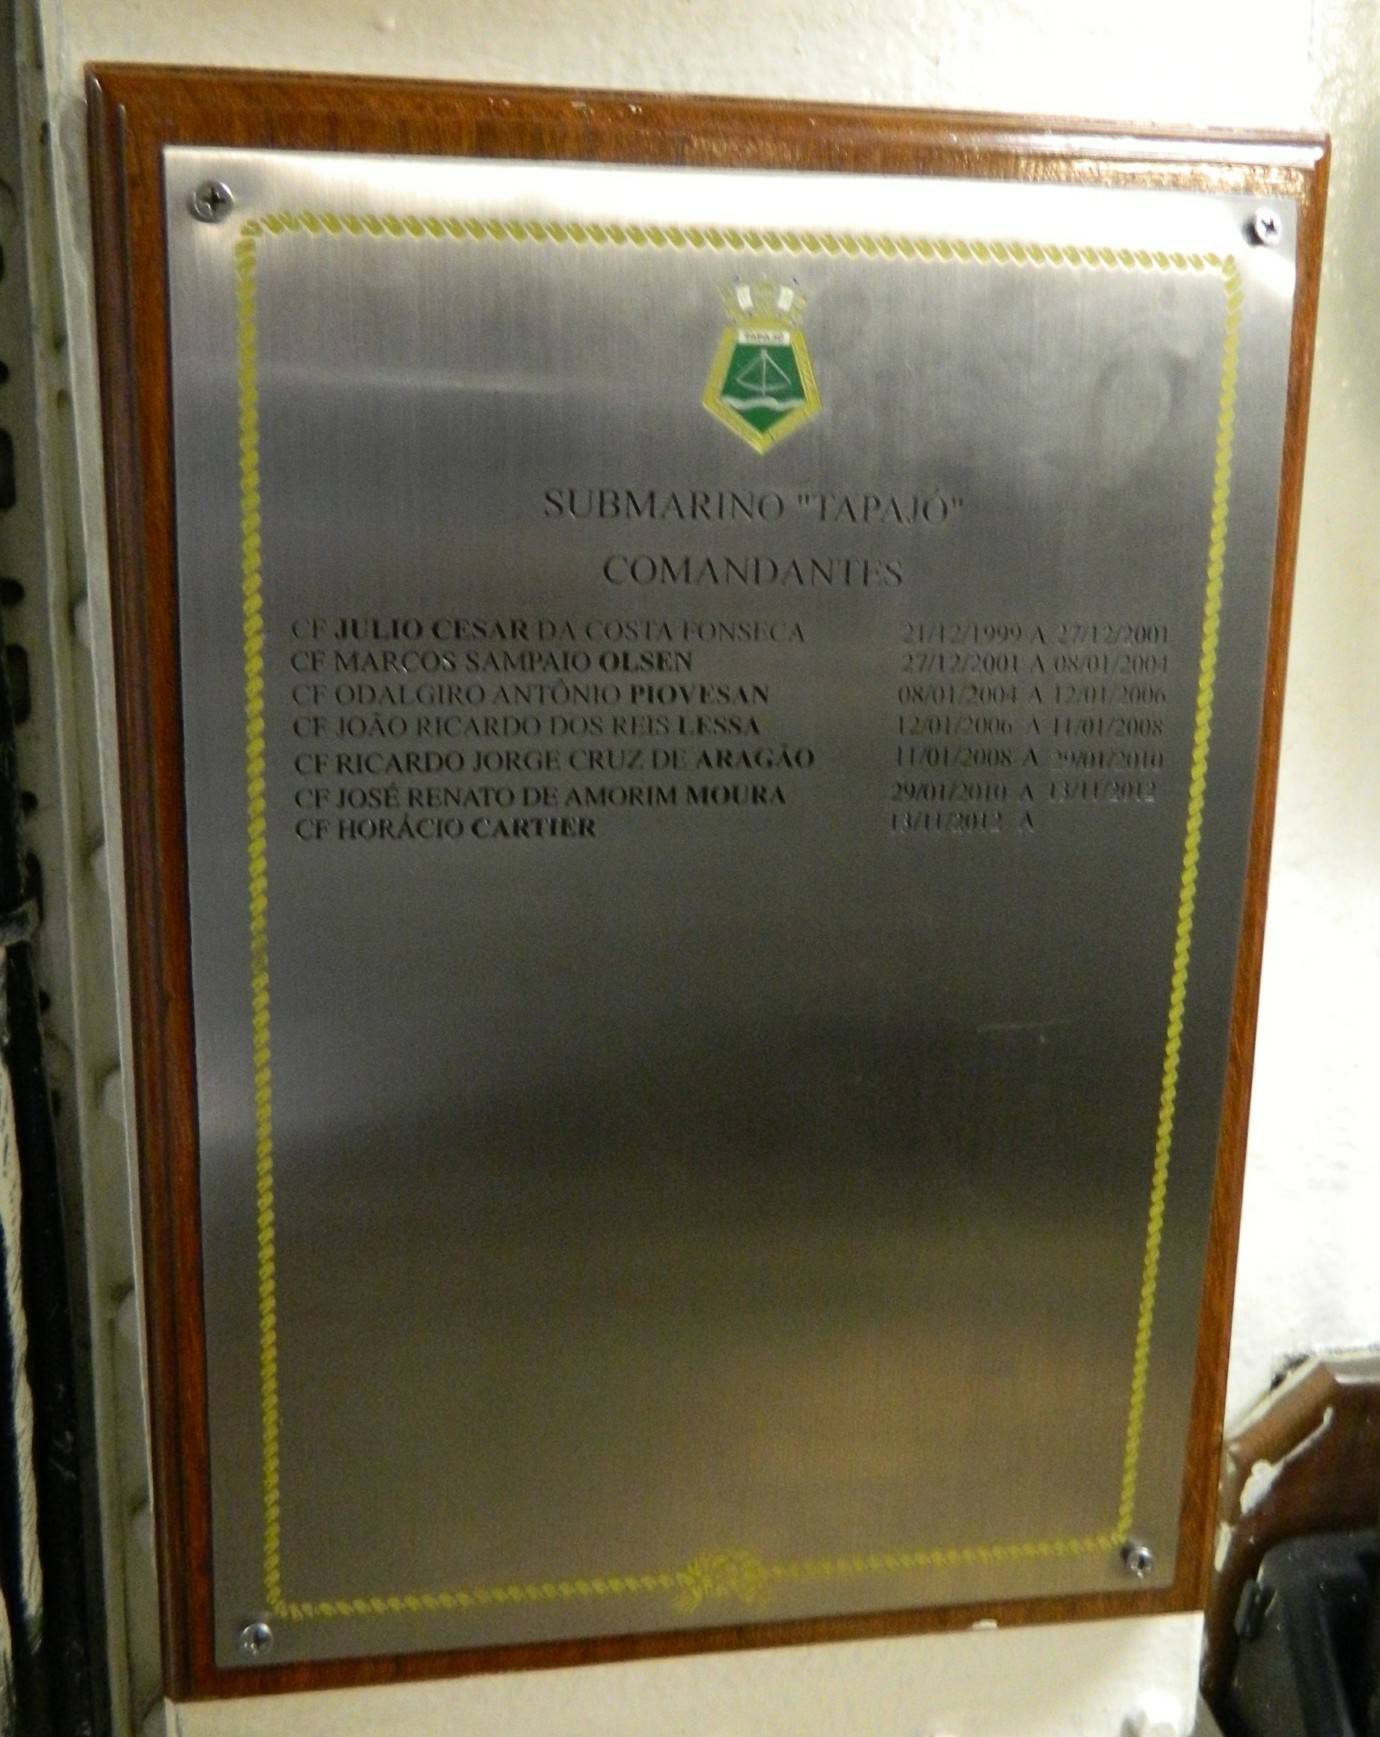 Placa com os Oficiais Comandantes do Tapajó desde sua incorporação em 1999 até 2013. (foto: Ícaro Luiz Gomes – Revista Forças de Defesa – 12/03/2013)